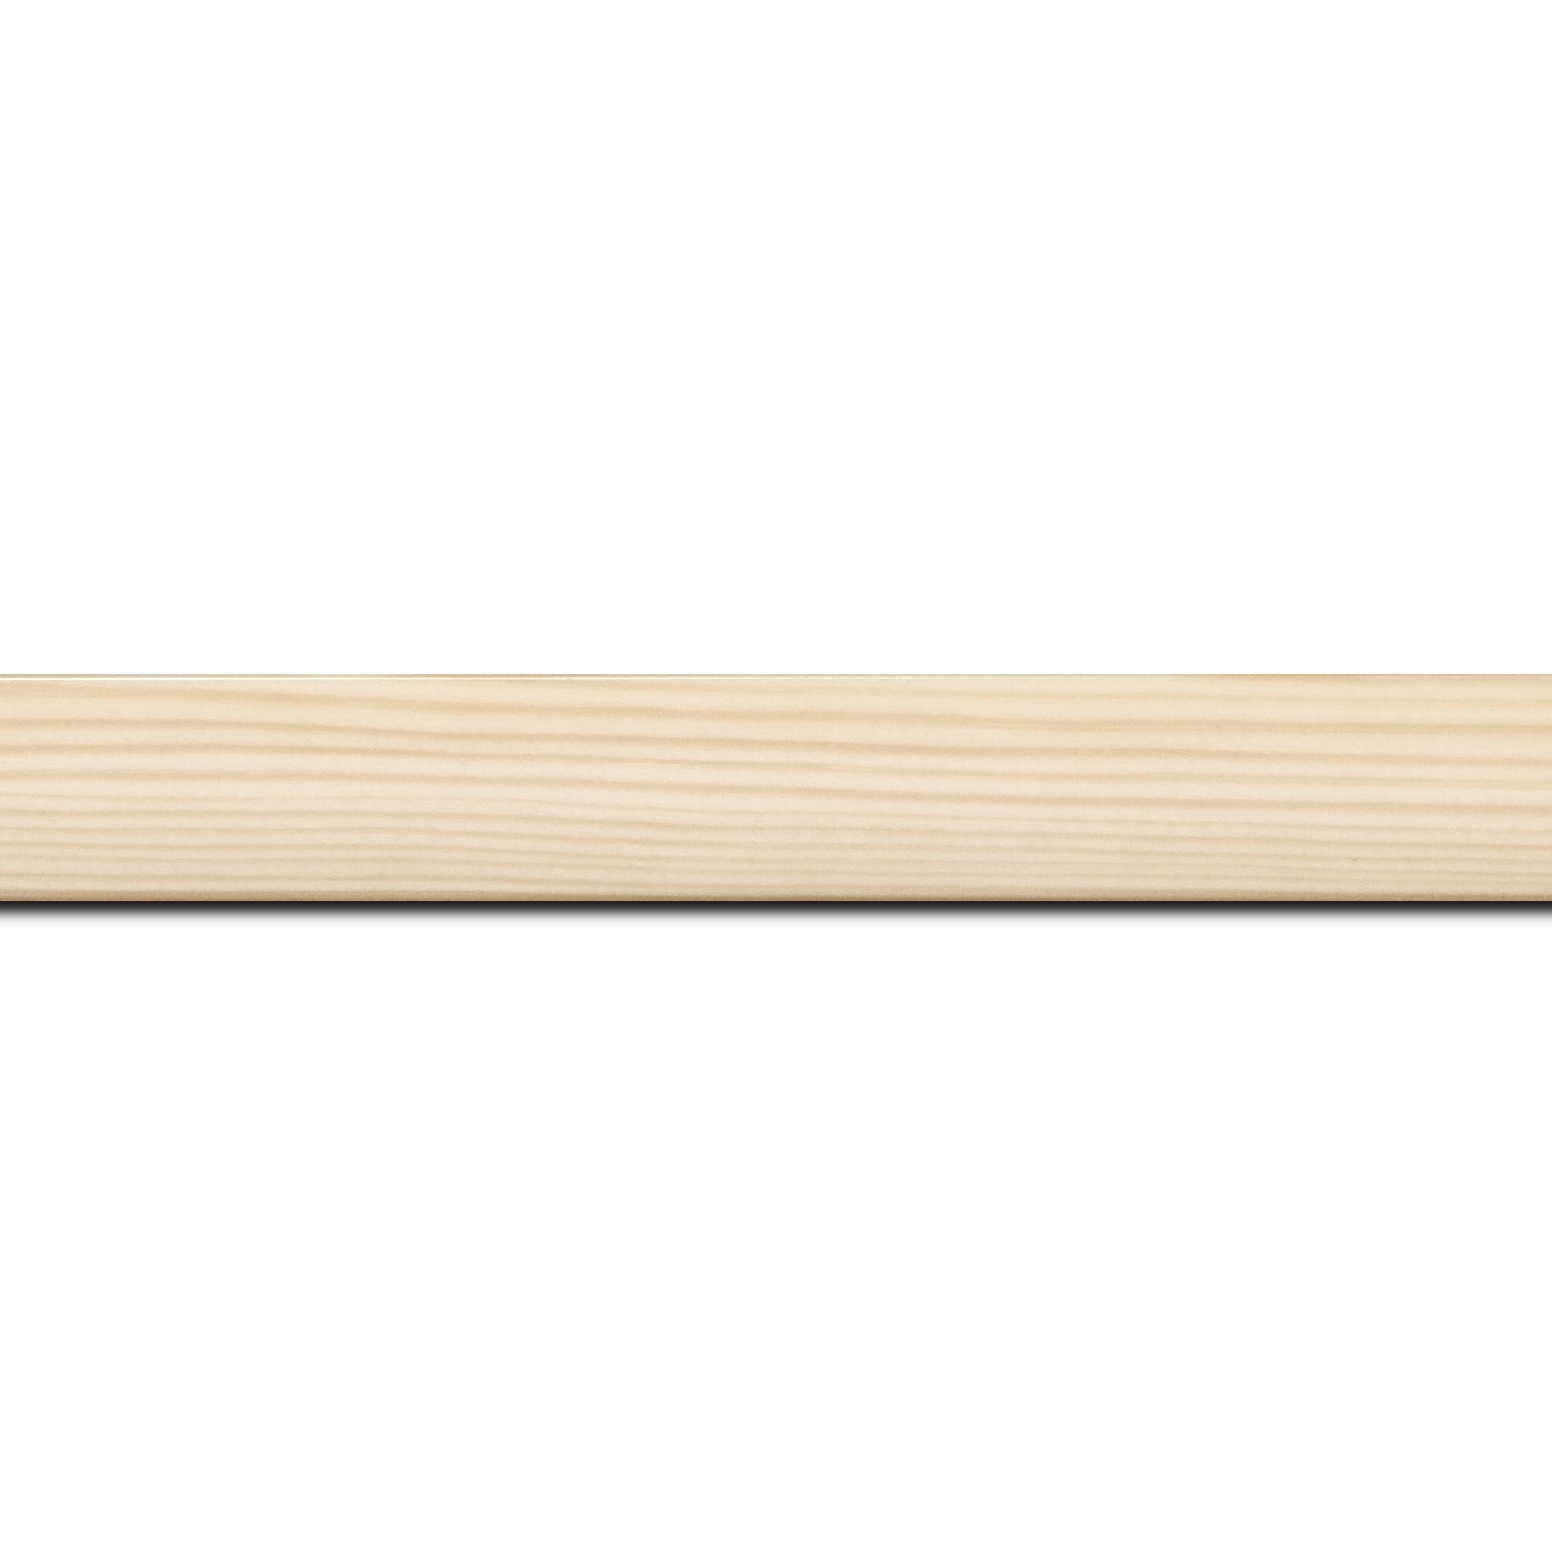 Pack par 12m, bois profil arrondi en pente plongeant largeur 2.4cm couleur naturel finition vernis brillant,veine du bois  apparent (pin) ,  (longueur baguette pouvant varier entre 2.40m et 3m selon arrivage des bois)